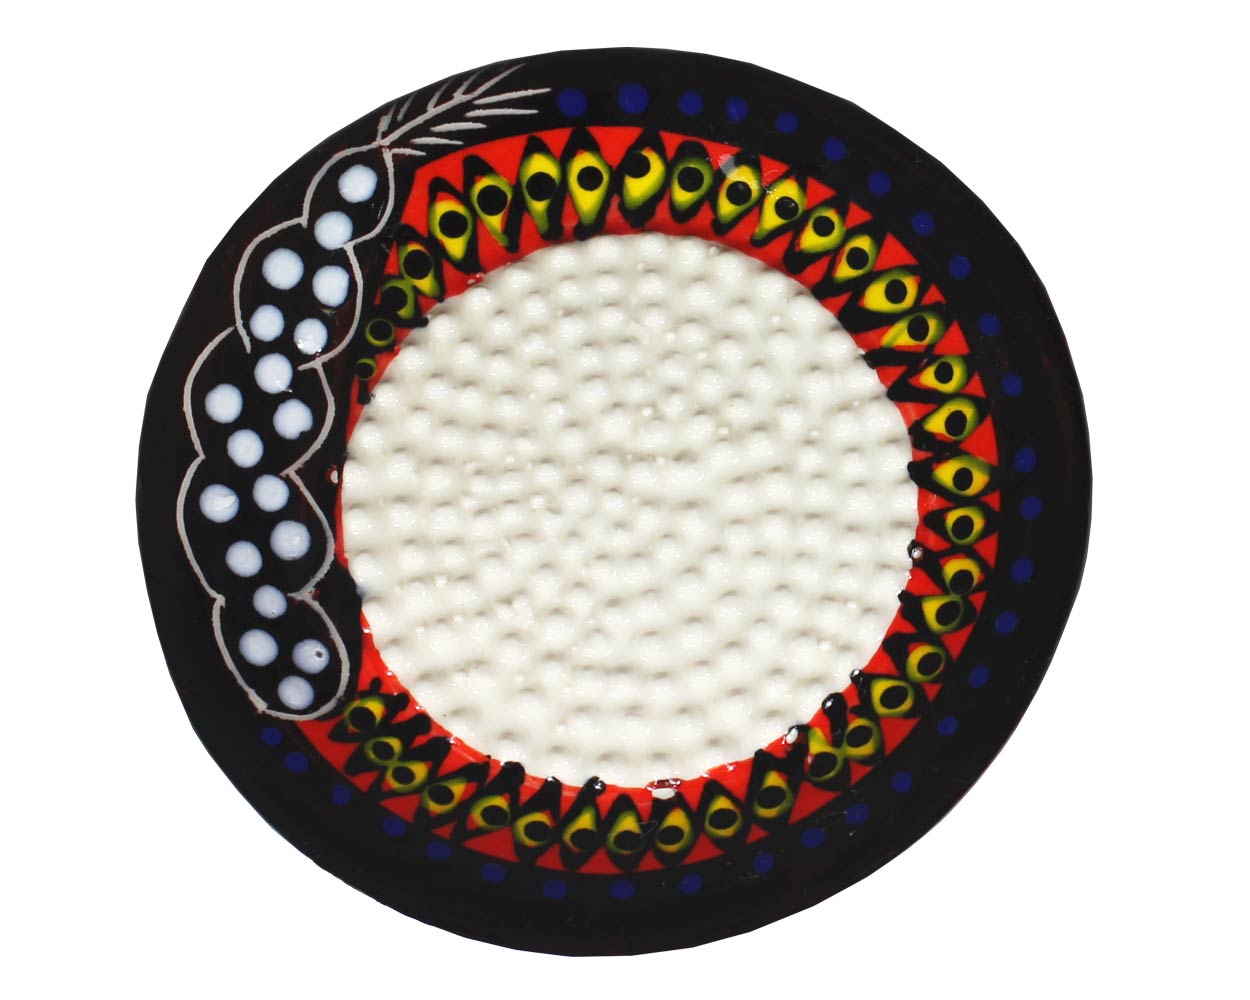 Afrikanische Keramikreibe - Reibe für Knoblauch, Ingwer und mehr